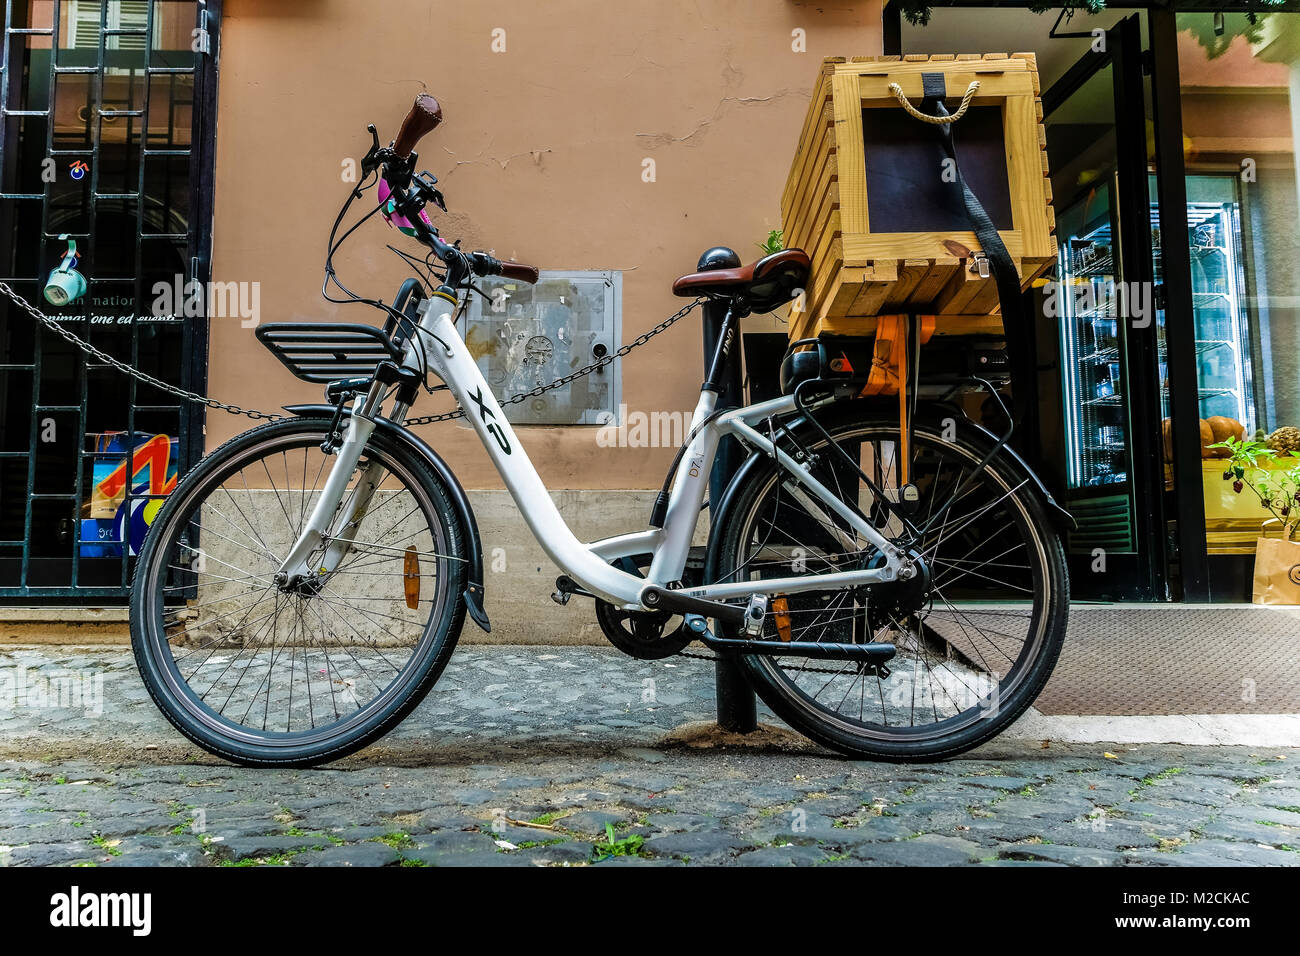 Vélo blanc avec panier de livraison en bois, pour le service de livraison de nourriture, garé et verrouillé devant un magasin. Rome, Italie, Europe, Union européenne, UE Banque D'Images